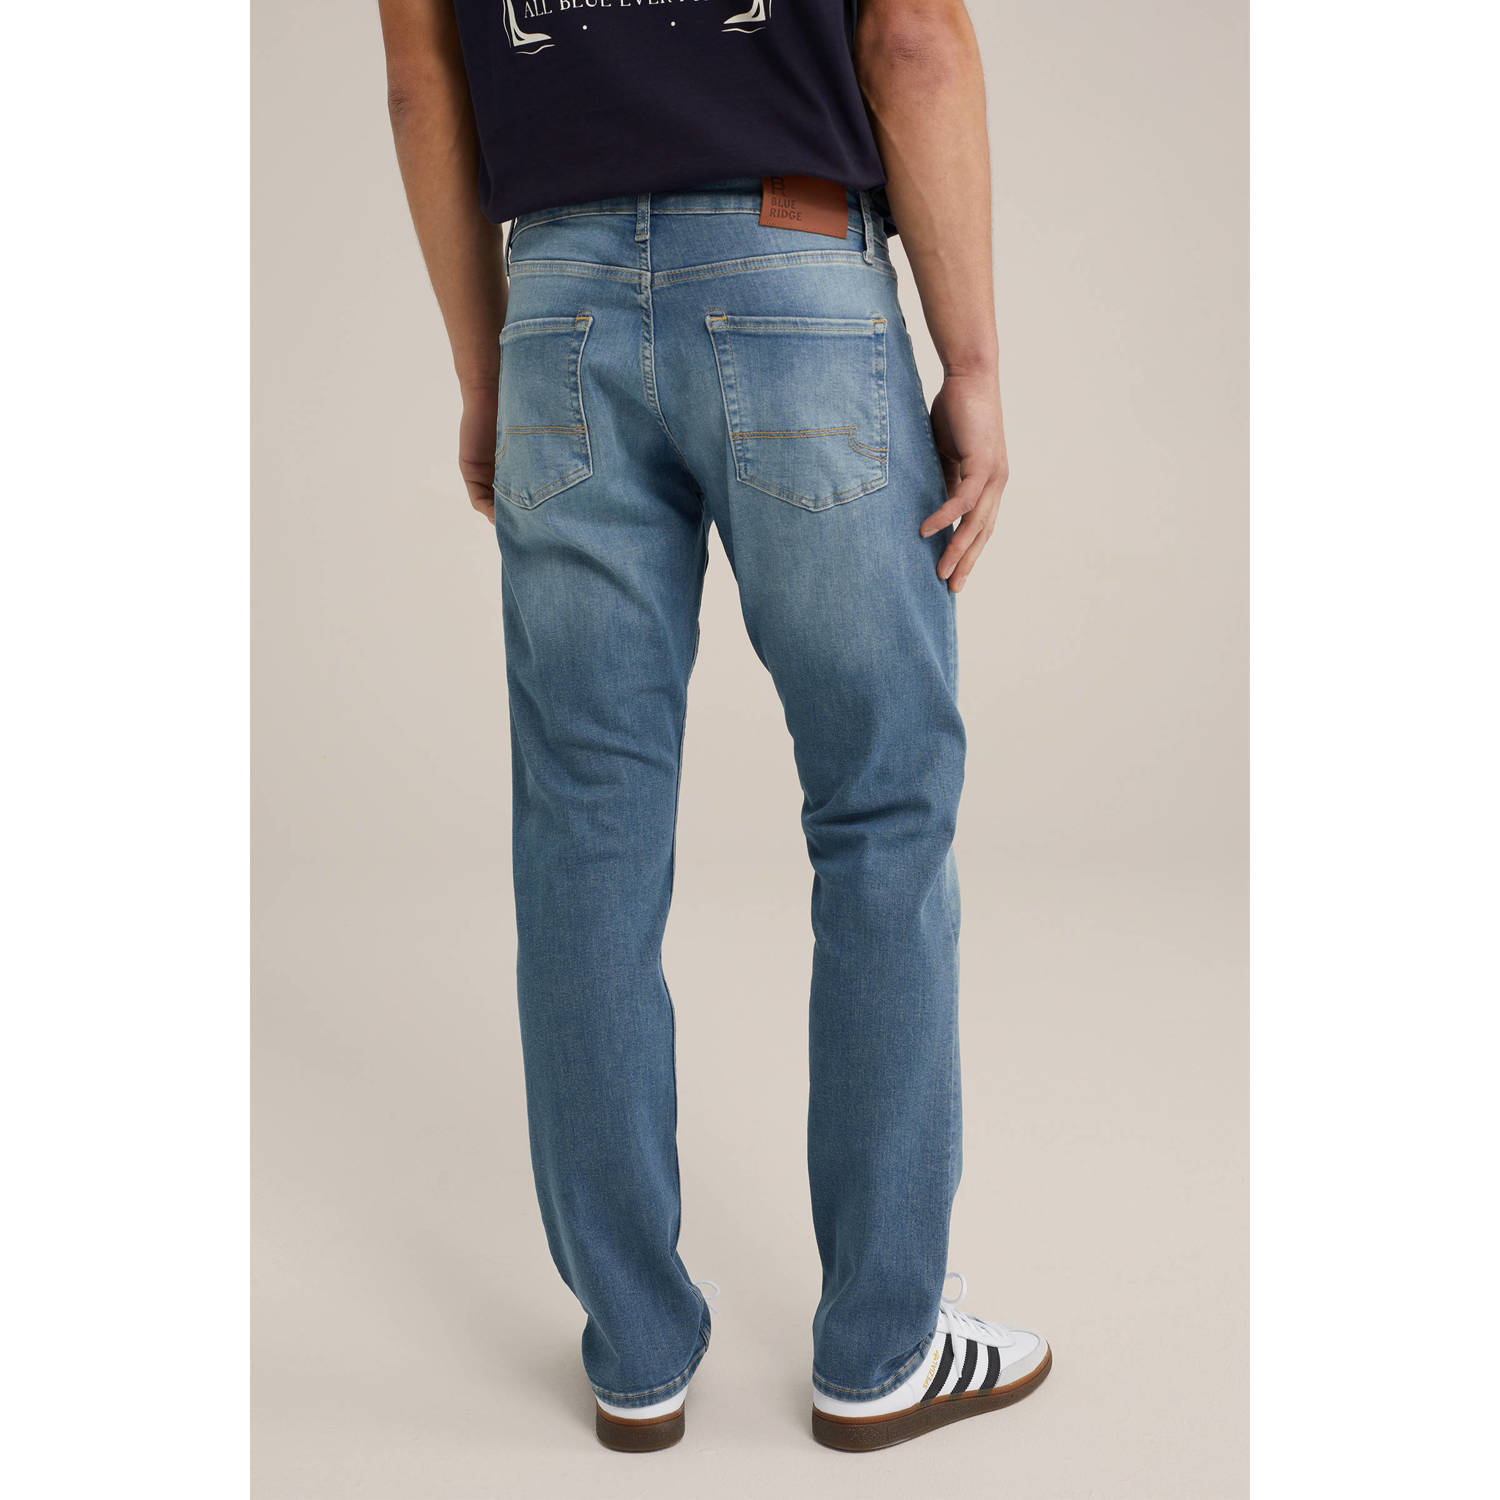 WE Fashion regular fit jeans blue denim